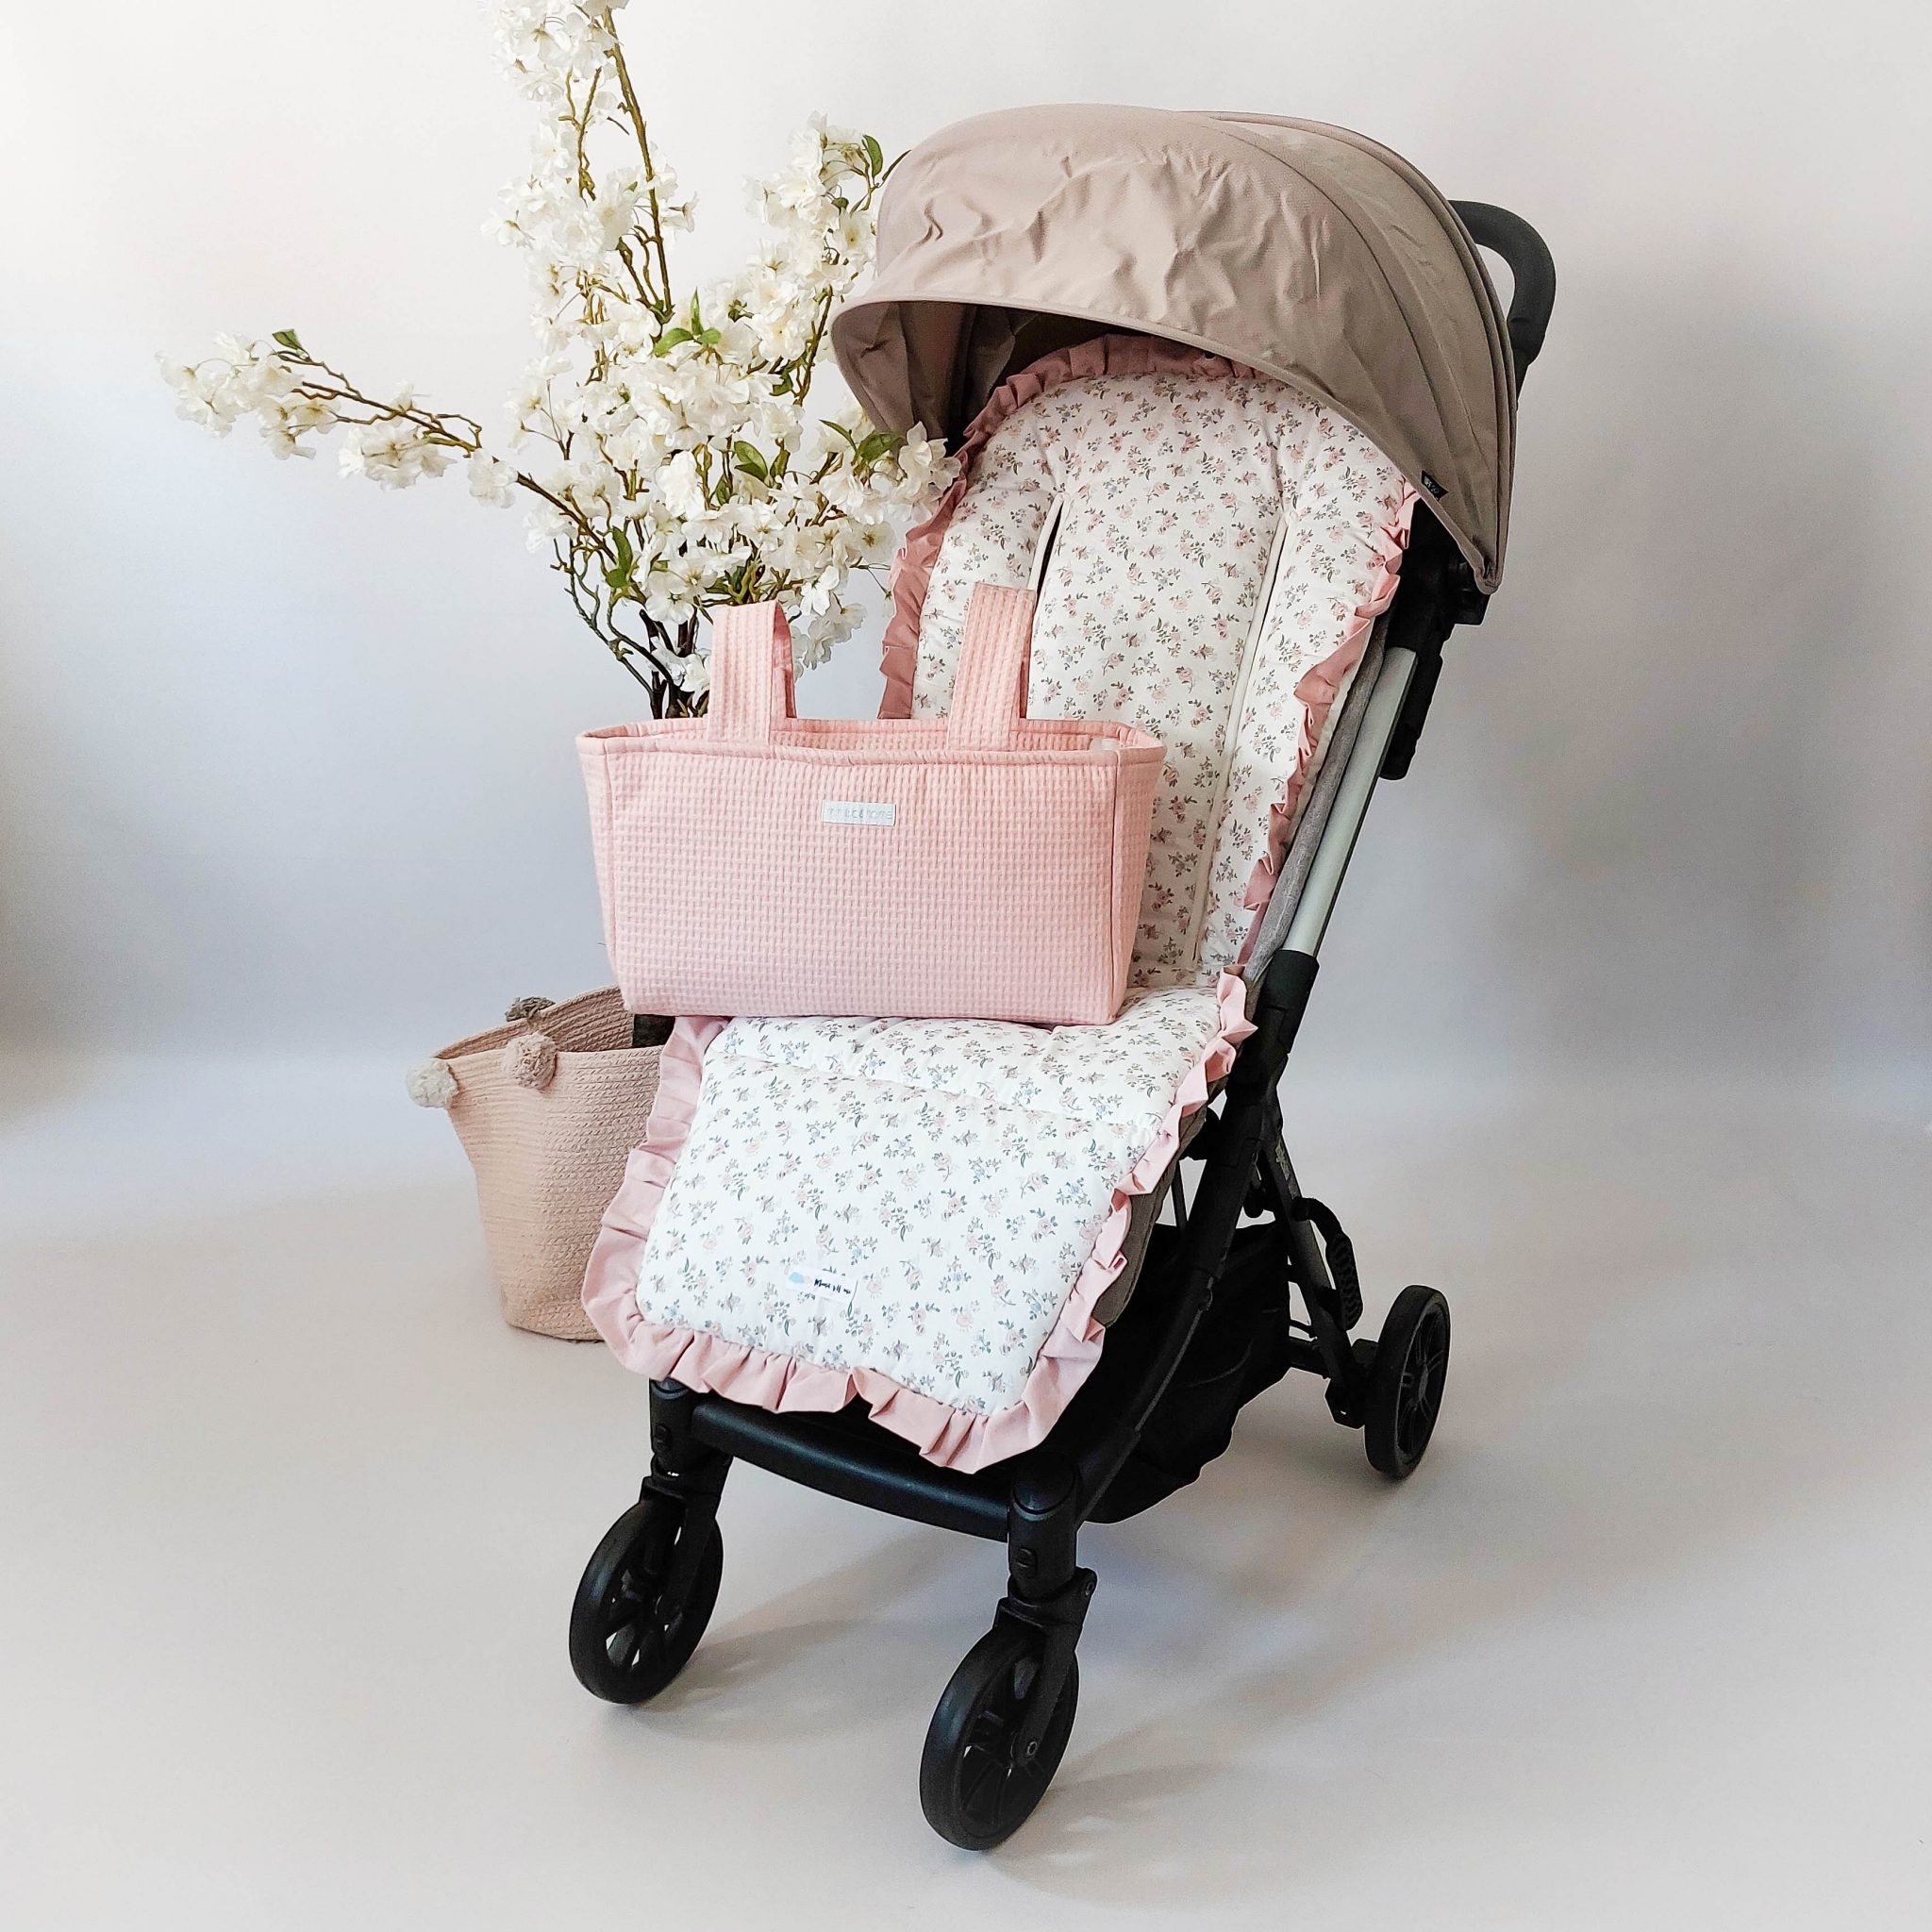 12 ideas de Colchoneta para silla de paseo bebe